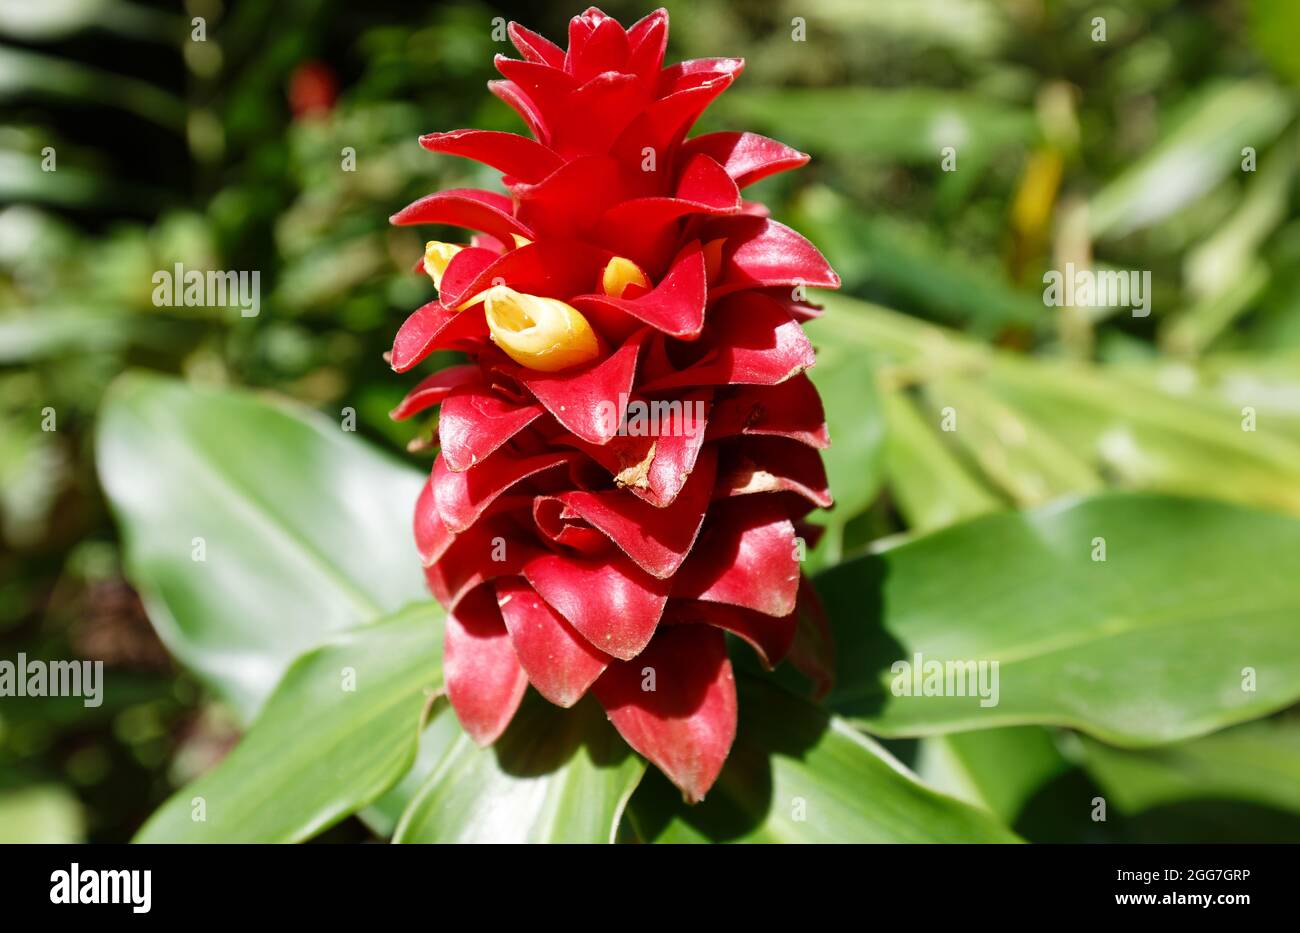 Tête indienne Ginger fleur vue dans le jardin tropical situé près de fort de France, capitale de l'île de la Martinique. Antilles françaises. Banque D'Images